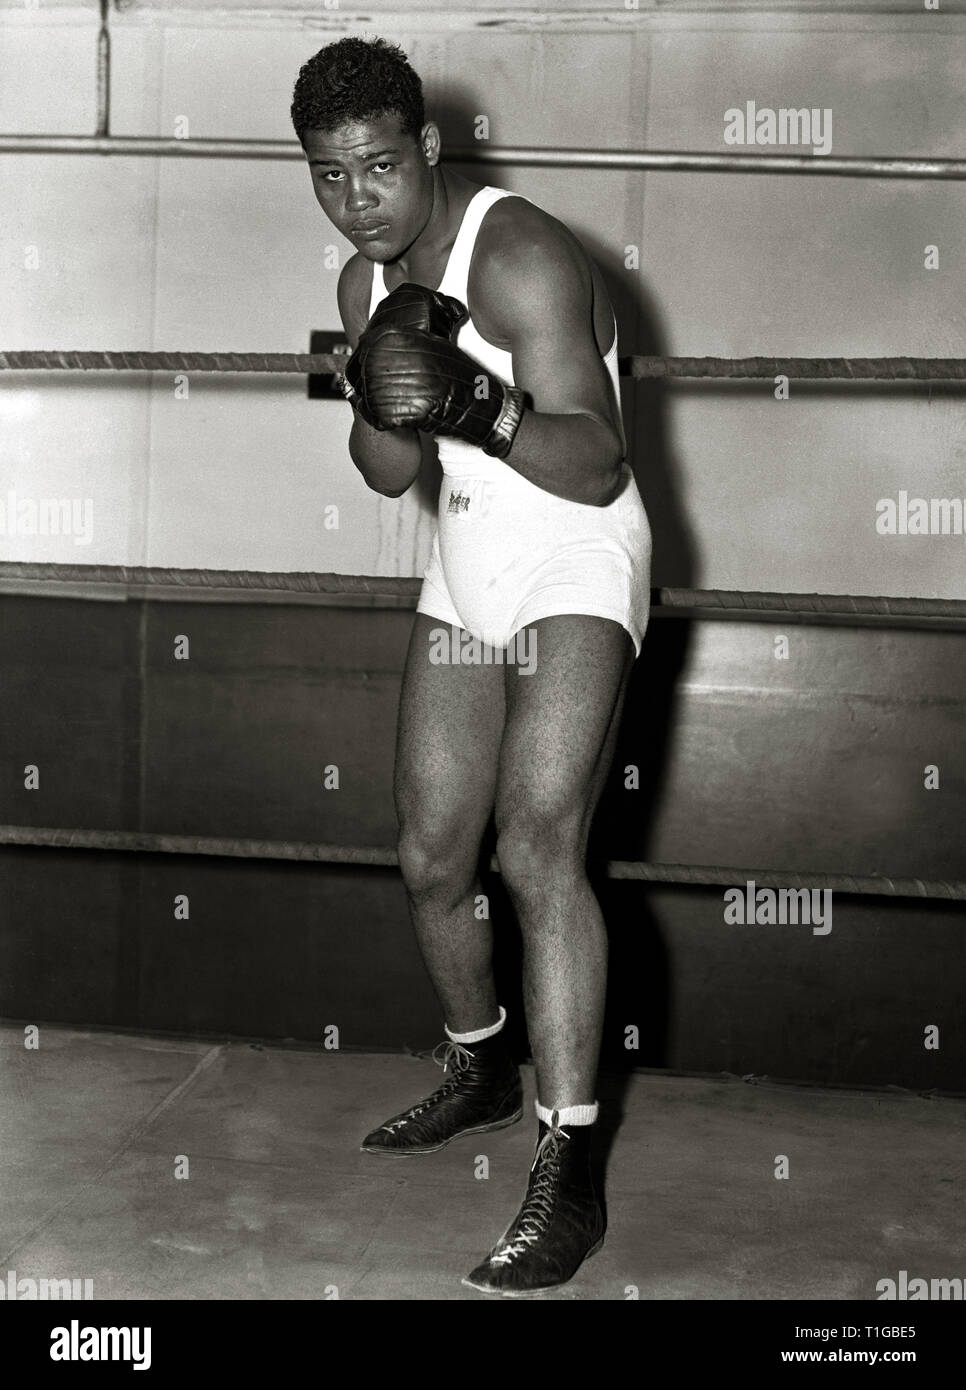 Boxer Joe Louis Wearing Boxing Gloves Photograph by Bettmann - Pixels